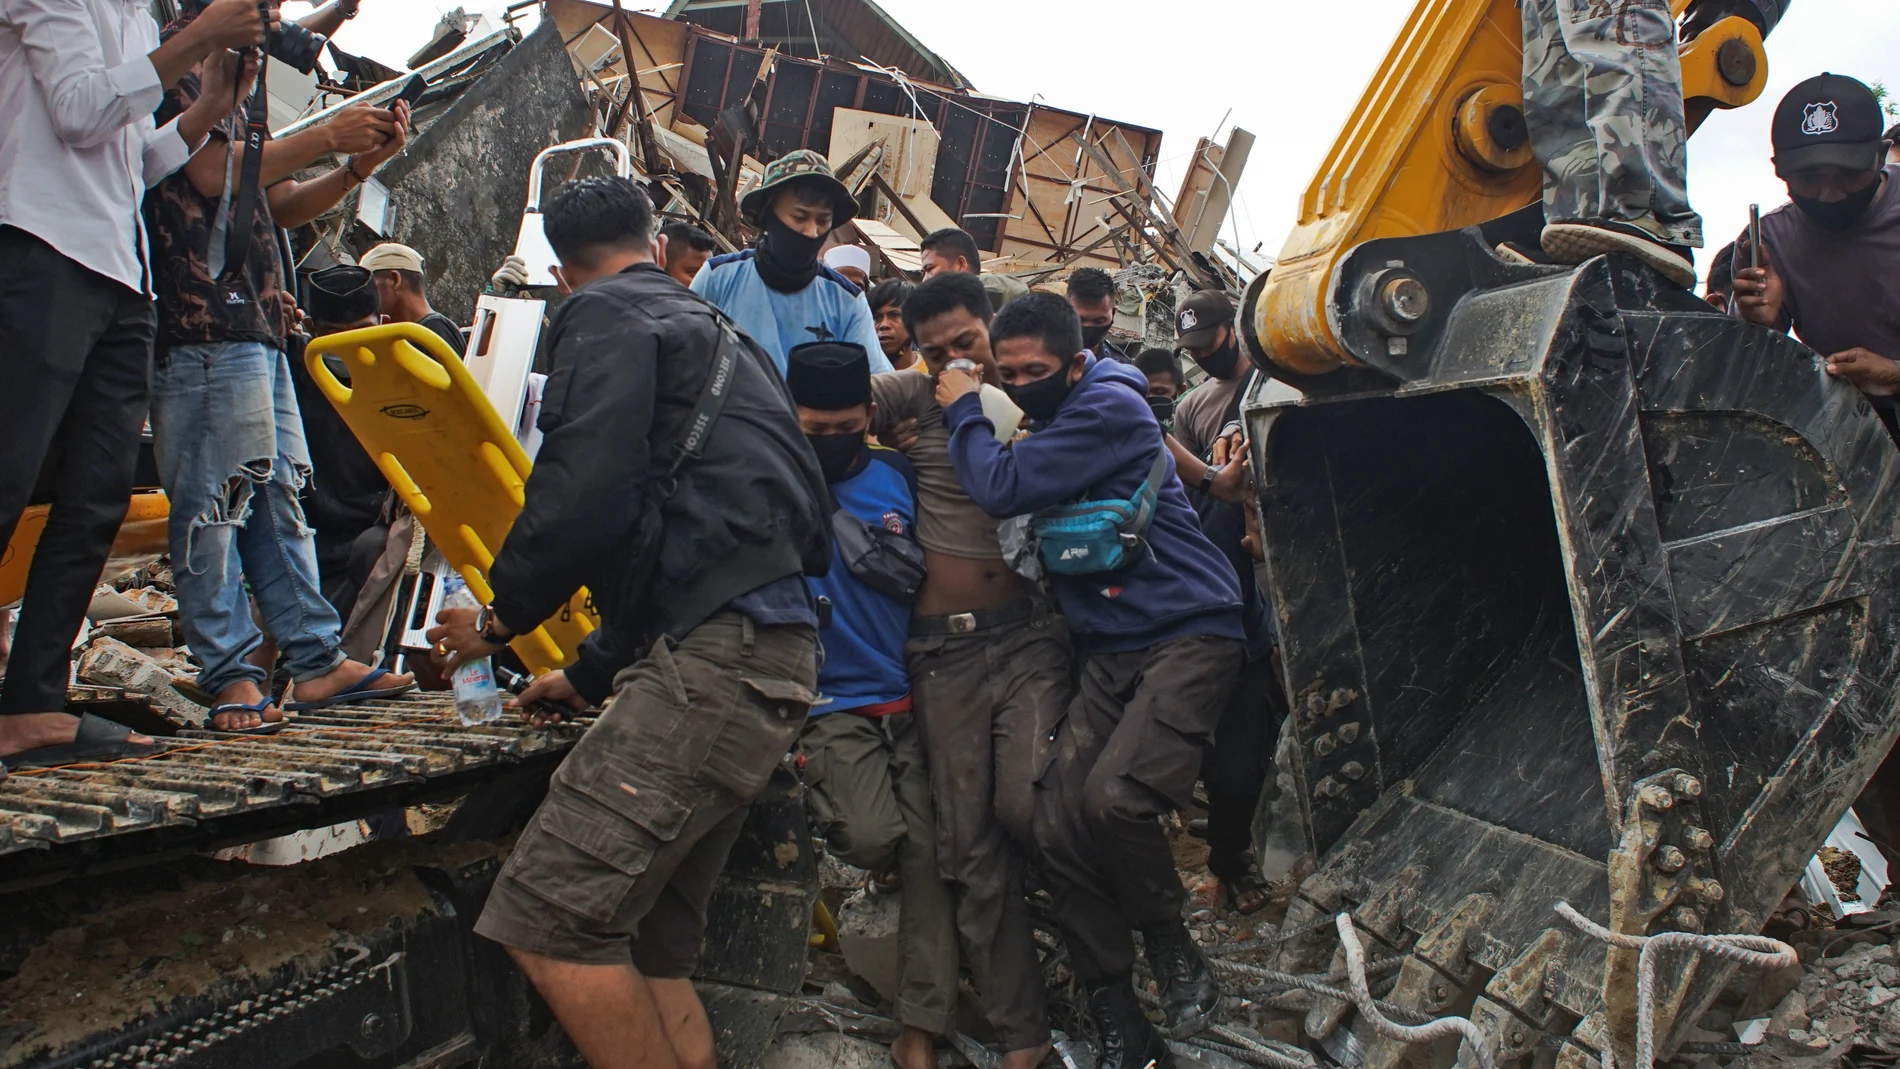 Un grupo de jóvenes rescata a un hombre que se había quedado bajo los escombros de un edificio gubernamental tras el terremoto en Mamuju, Indonesia